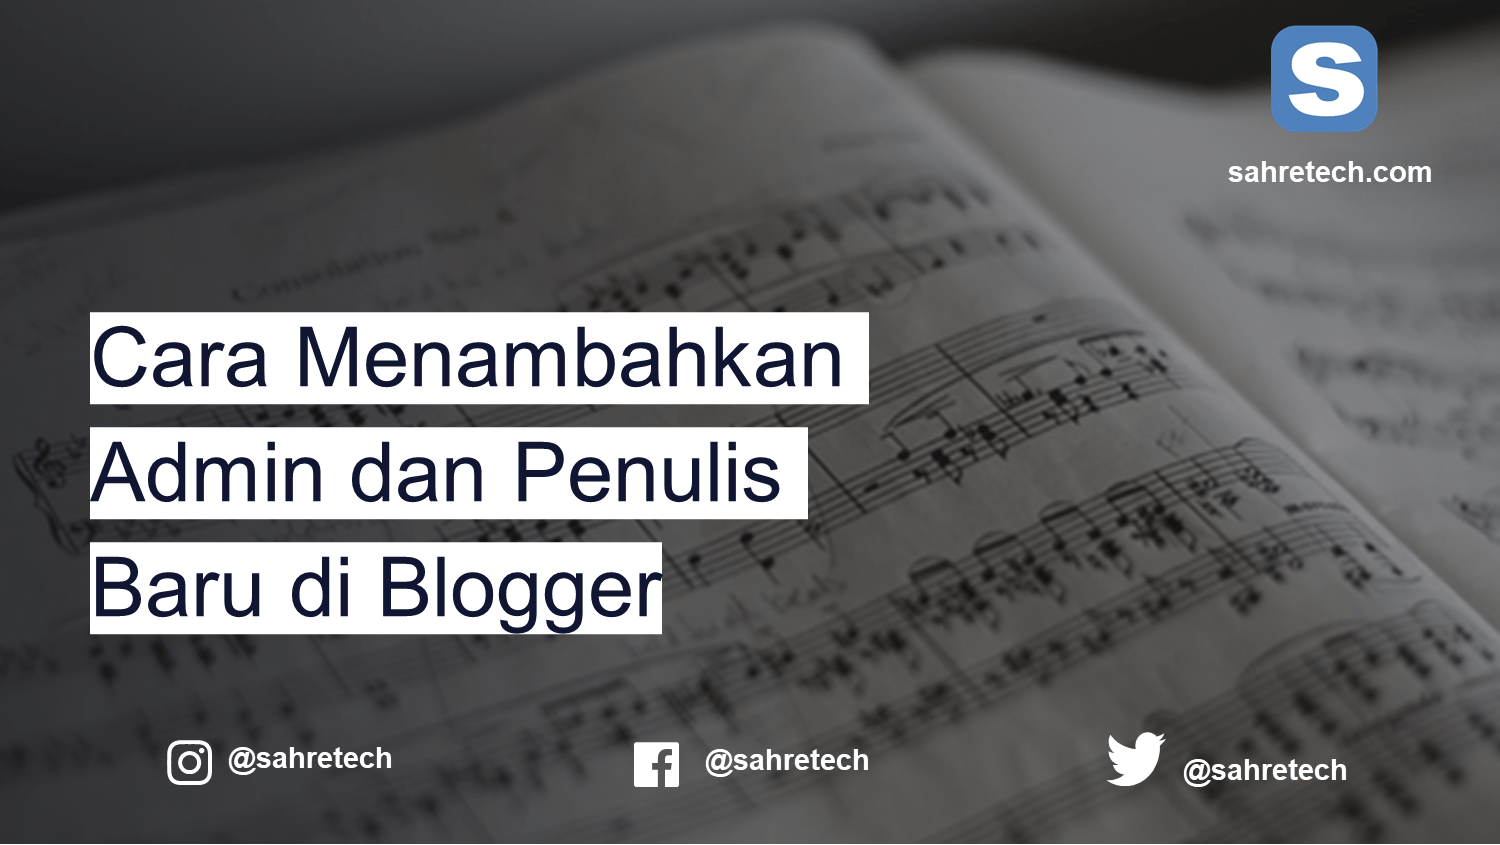 Cara Menambahkan Admin dan Penulis Baru di Blogger - Sahretech